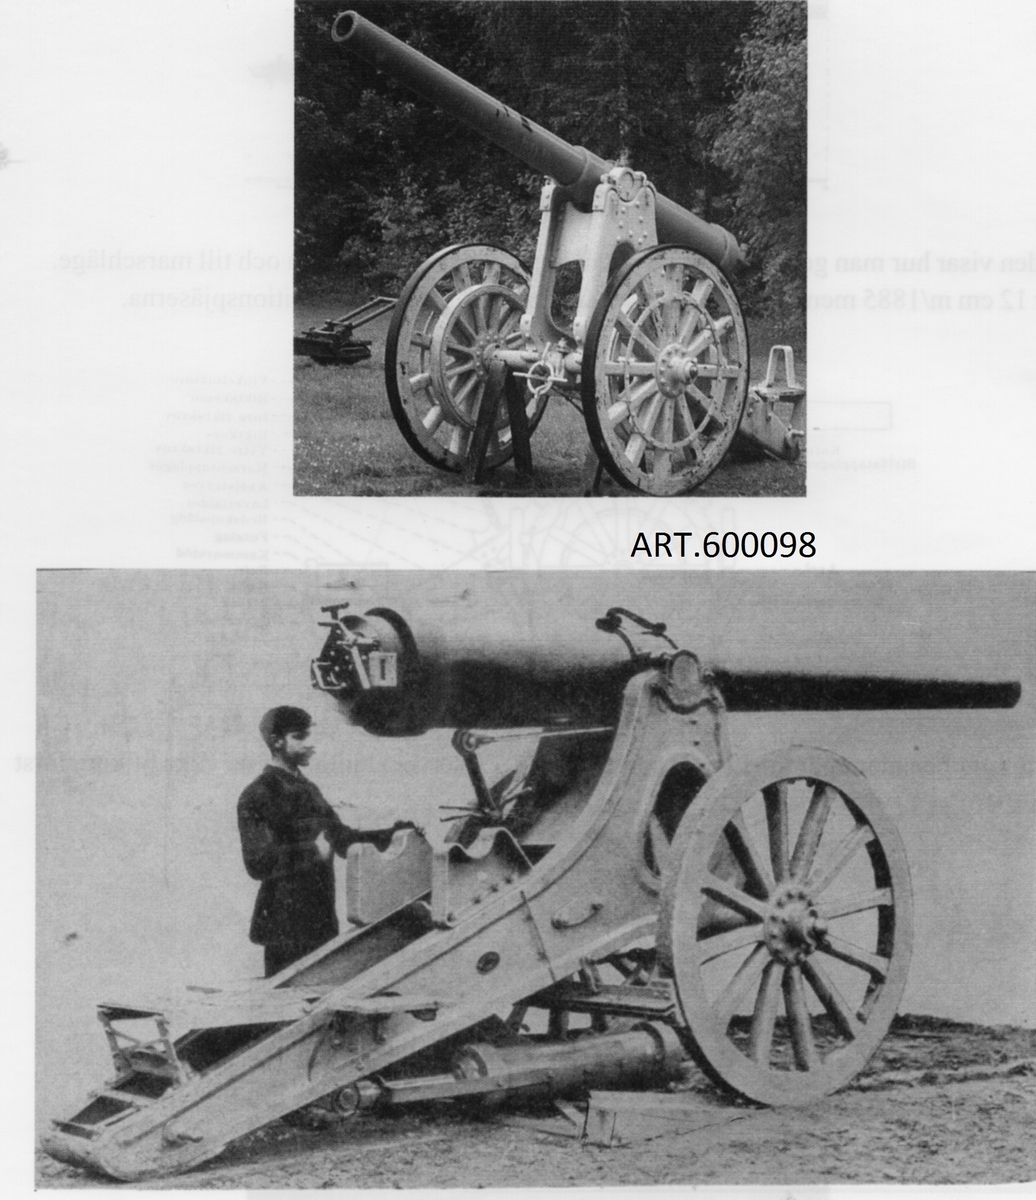 För fästningarna behövdes kanoner med allt längre räckvidd, särskilt Karlsborg. En serie på två 16 cm kanoner beställdes efter försök redan från 1886. Genom att de var något instabila och mycket tunga blev det inte fler. En rapport talar om viss ”otrygghet” vid både transport och skjutning.
 Kanonerna överfördes från Karlsborg till Bodens fästning där de bestyckade ett batteri.

Rekylen skulle fångas upp via långa lutande kilar (ca 5 meter långa) som pjäsen skulle rulla upp på genom rekylkraften och sedan kunna rulla åter till eldläget. Även här blev det osäkert och skulle kanonen välta skulle det vara farligt och mycket besvärligt att åter räta upp. (SE på bilder med kilar för 12 cm kanon m/1885.) Det löstes i stället med kraftiga kompressorer fästa i betongunderlag och i lavetten, som på kort sträcka tog hand om nästan hela rekylen och förde fram pjäsen igen. En liten kil fanns kvar.( Se bilder)

DATA	Totalvikt 5 000 kg varav eldrör 3000 kg, kaliber 155 mm (betecknad 16 cm). Räckvidd ca 9,5 km.  Granat 32,2 kg